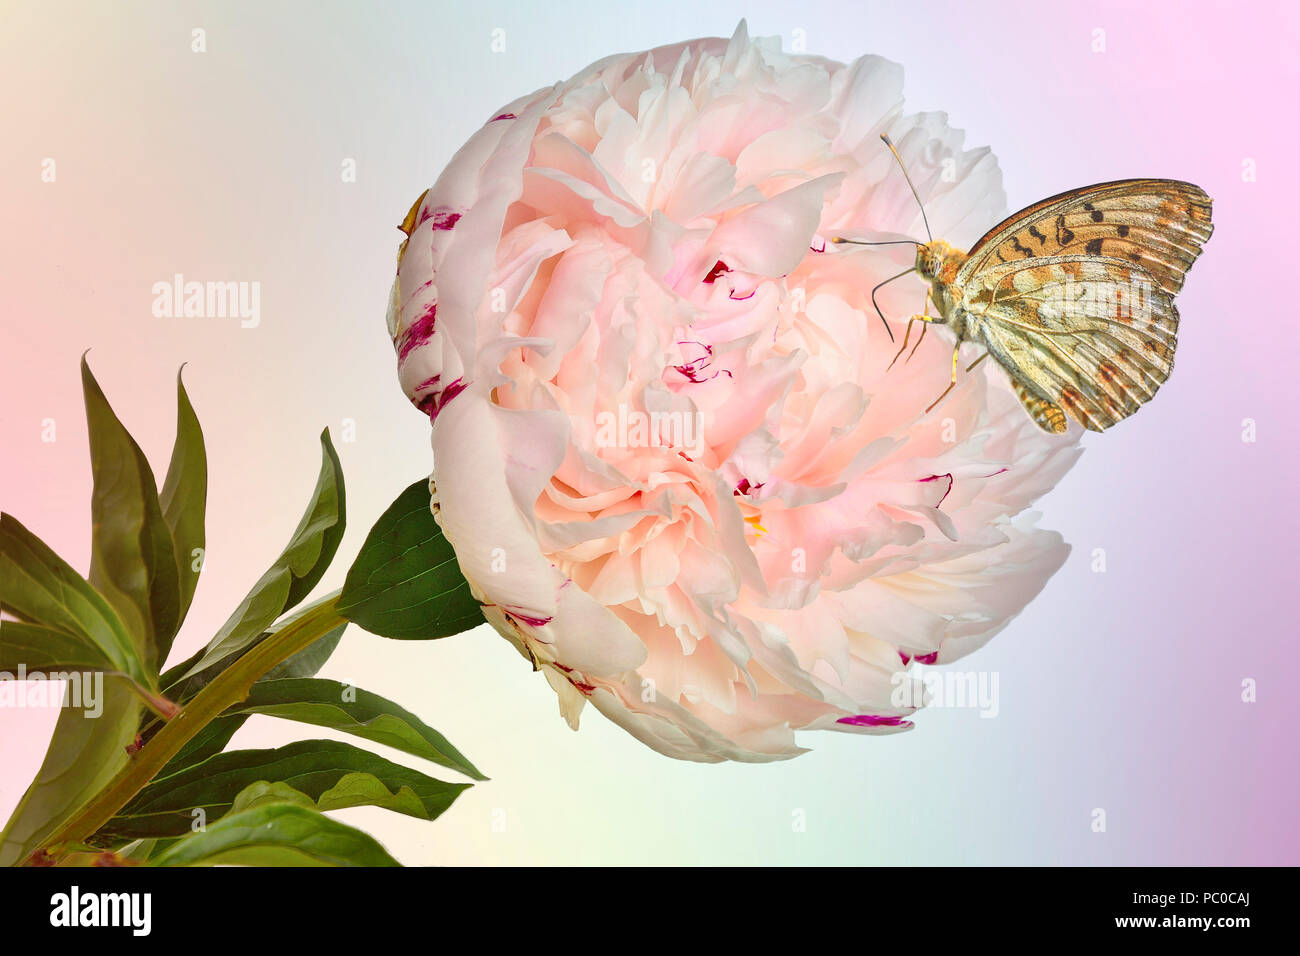 Schöner Schmetterling auf zarte creme-rosa Pfingstrose Blüte mit grünen Blättern - wunderbare Sommer Hintergrund. Schönheit der Natur Konzept. Stockfoto